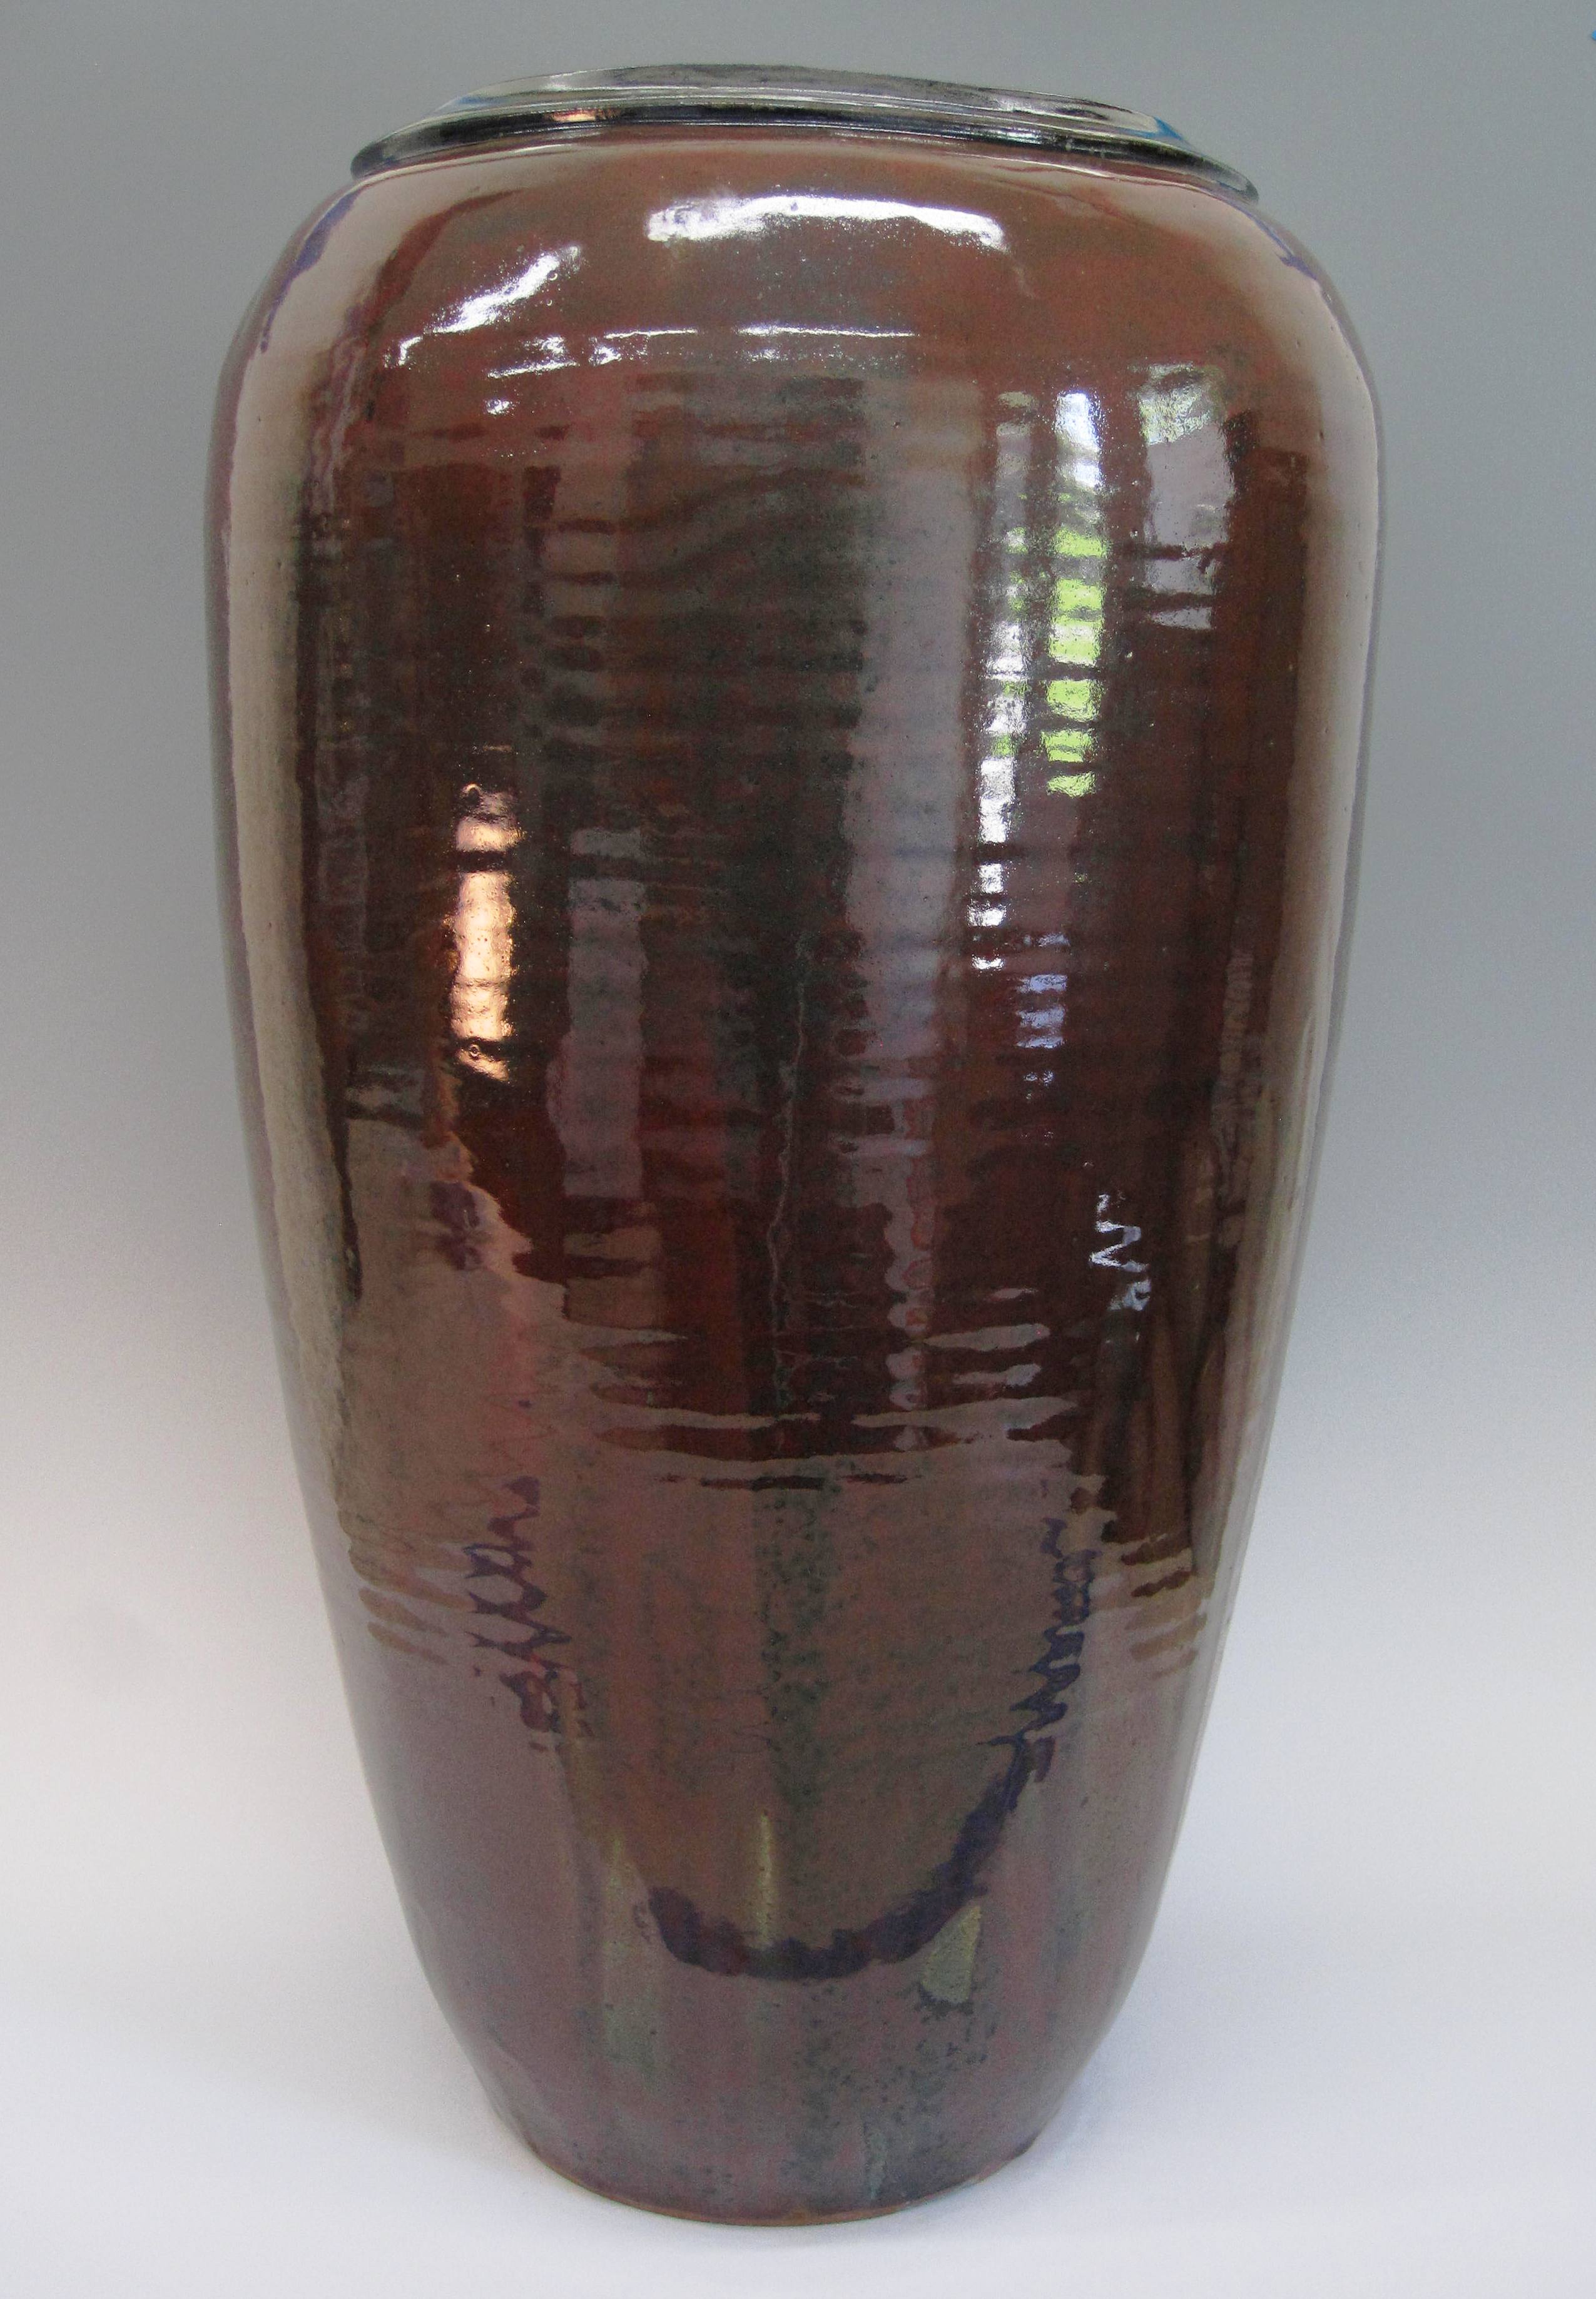 Tall Jar 24 1/2" x 13" item #249 $650